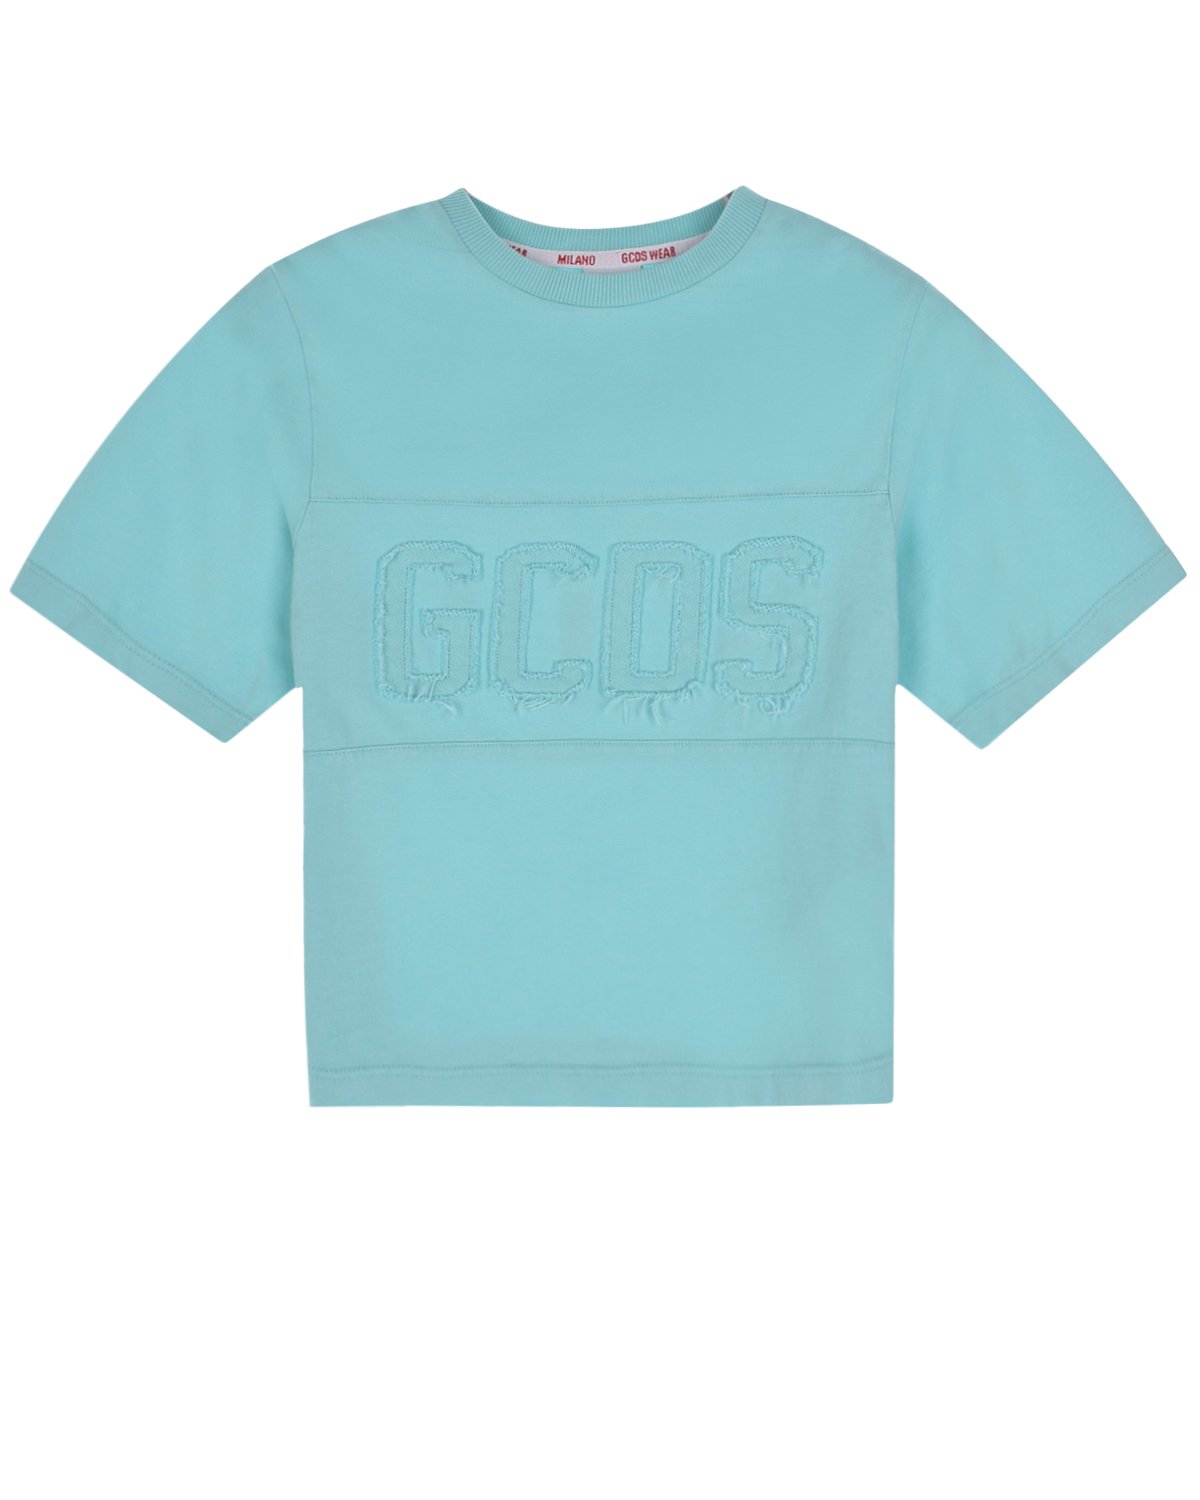 Голубая футболка с лого в тон GCDS, размер 104, цвет голубой - фото 1